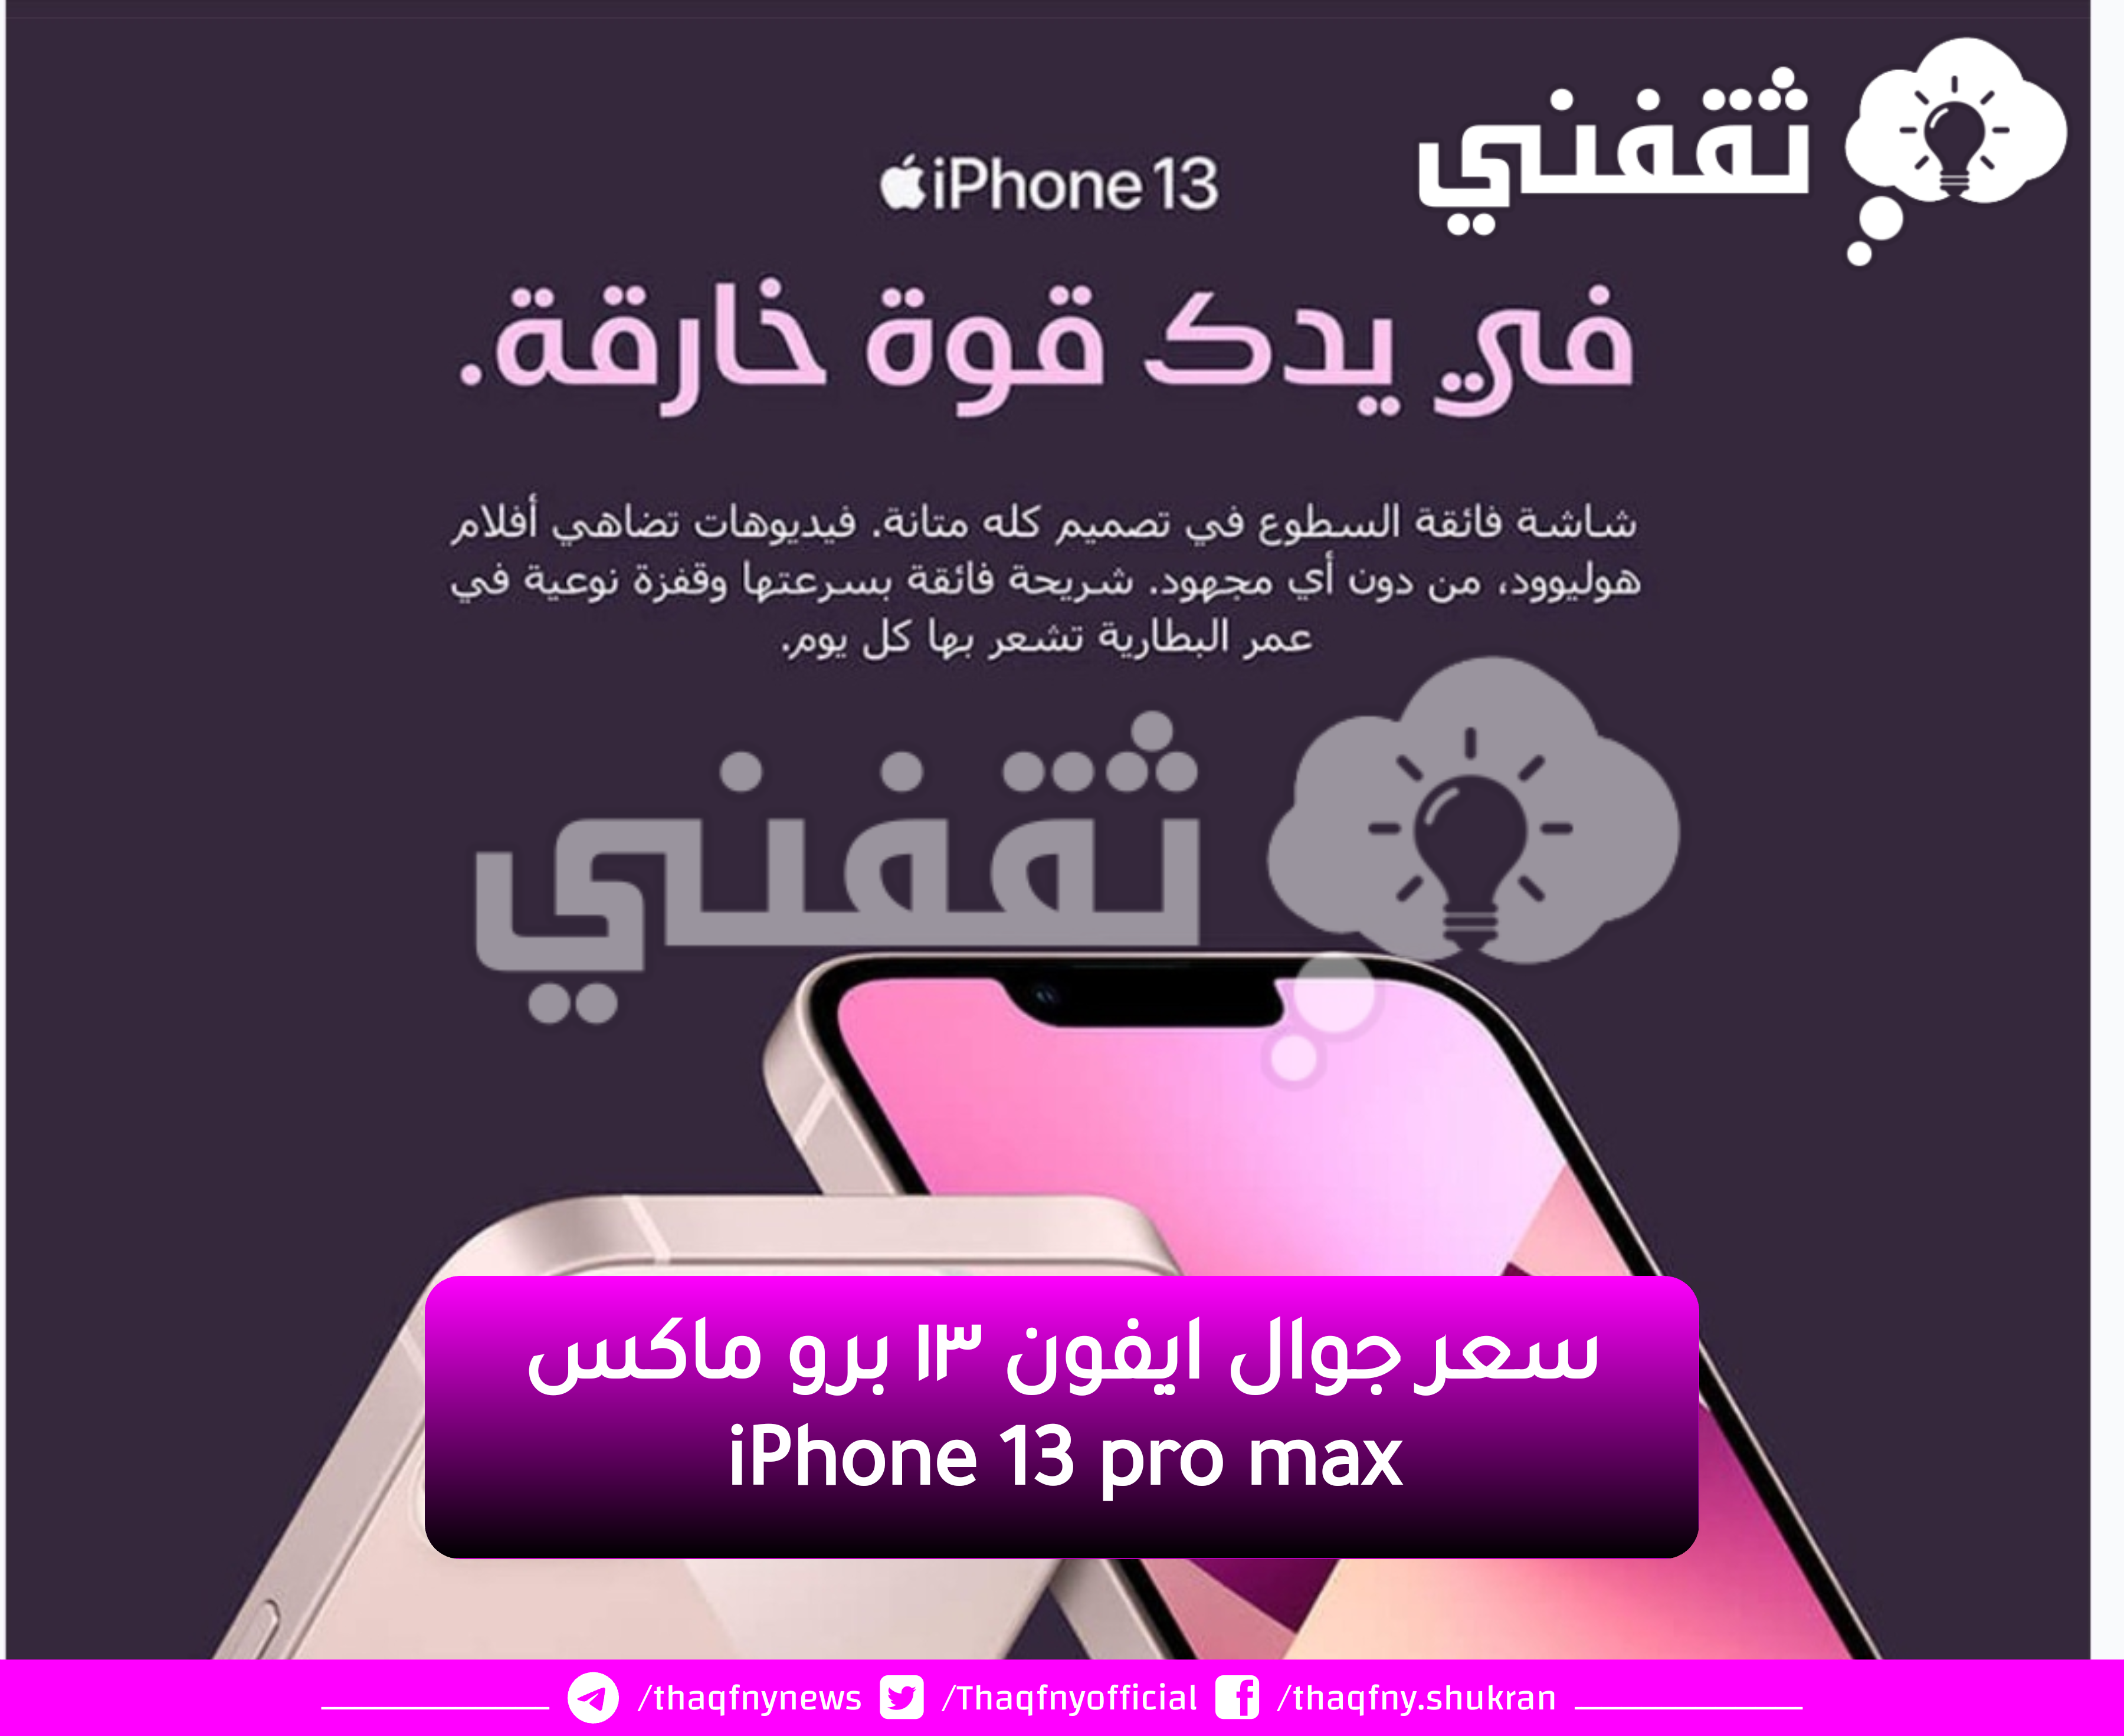 سعر جوال ايفون ١٣ برو ماكس iPhone 13 pro max جرير السعودية خصومات هائلة اغتنم الفرصة jarir.com